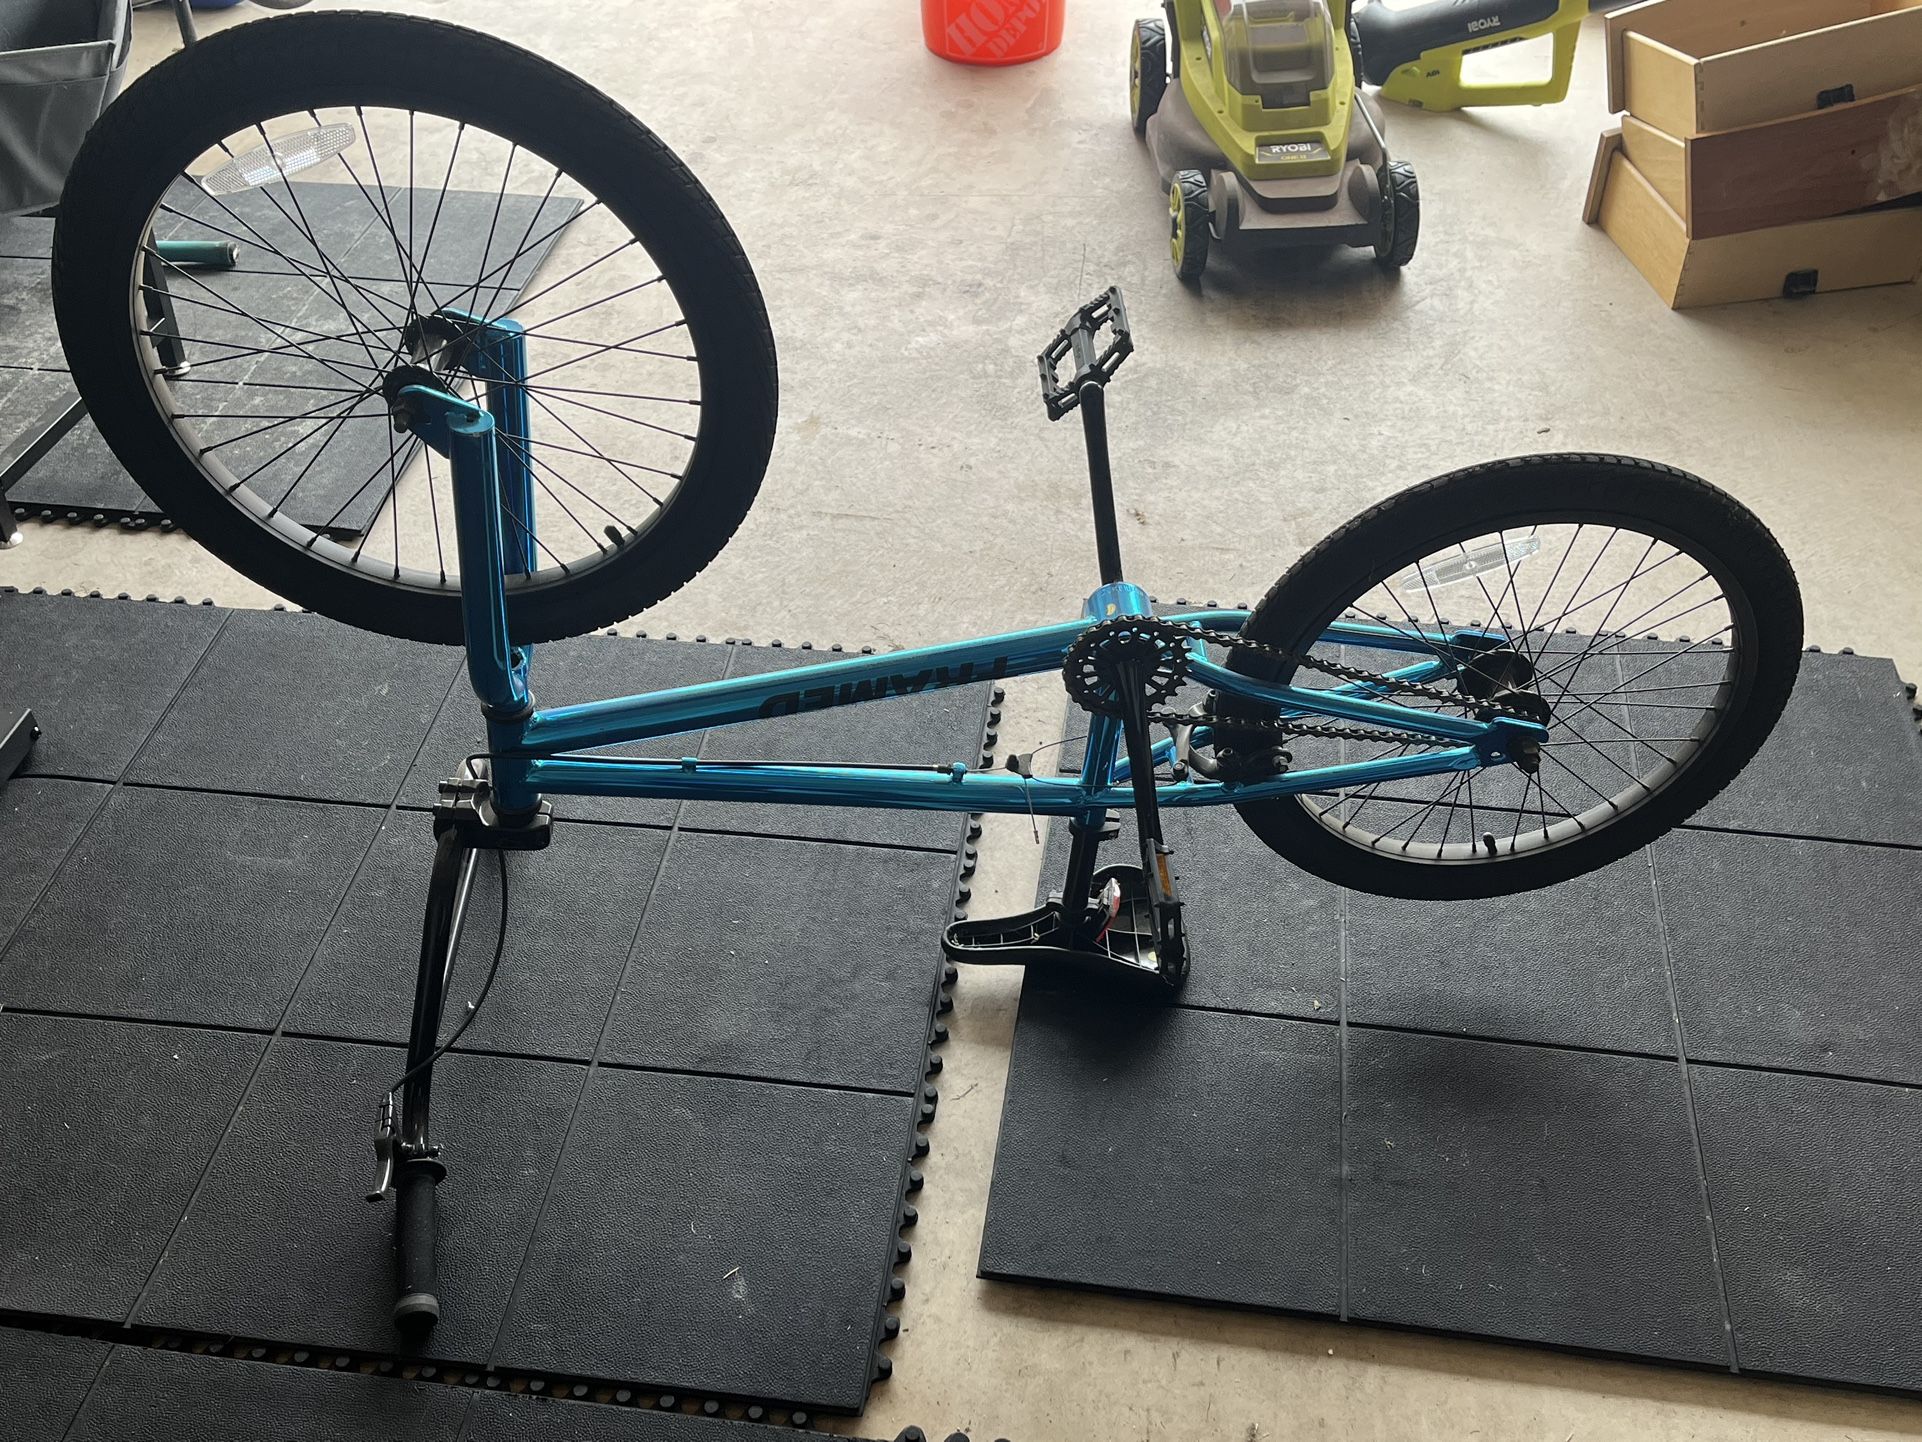 Framed Verdict BMX Bike